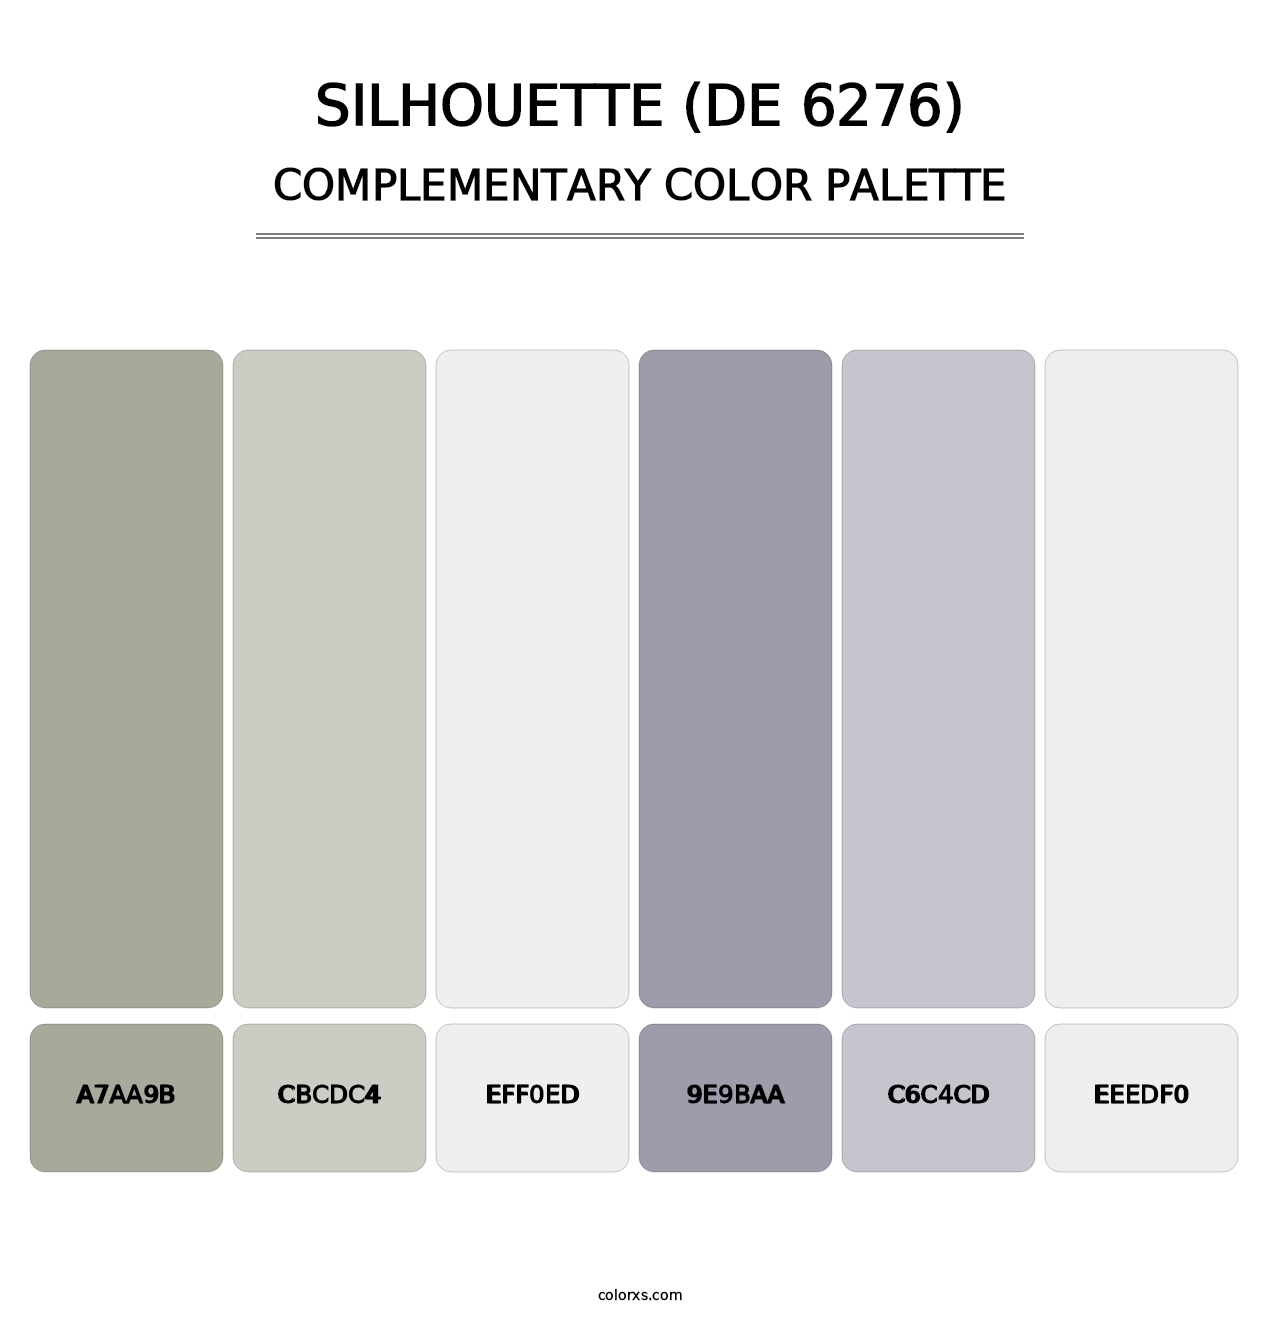 Silhouette (DE 6276) - Complementary Color Palette